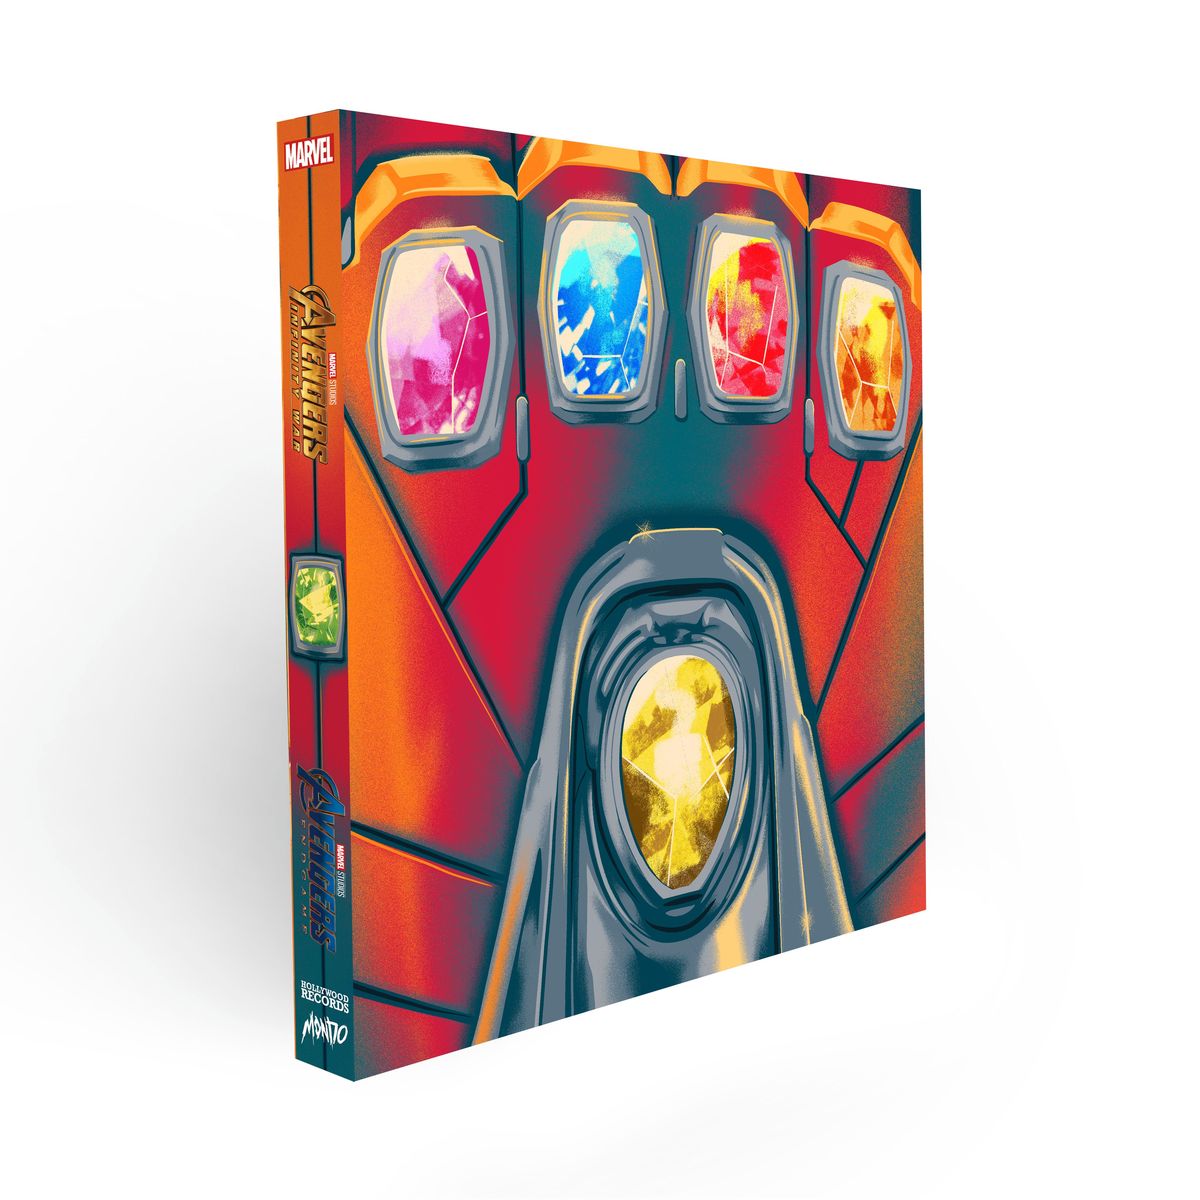 Avengers: Infinity War og Endgame Vinyl Soundtracks Få Mondo Box Sets